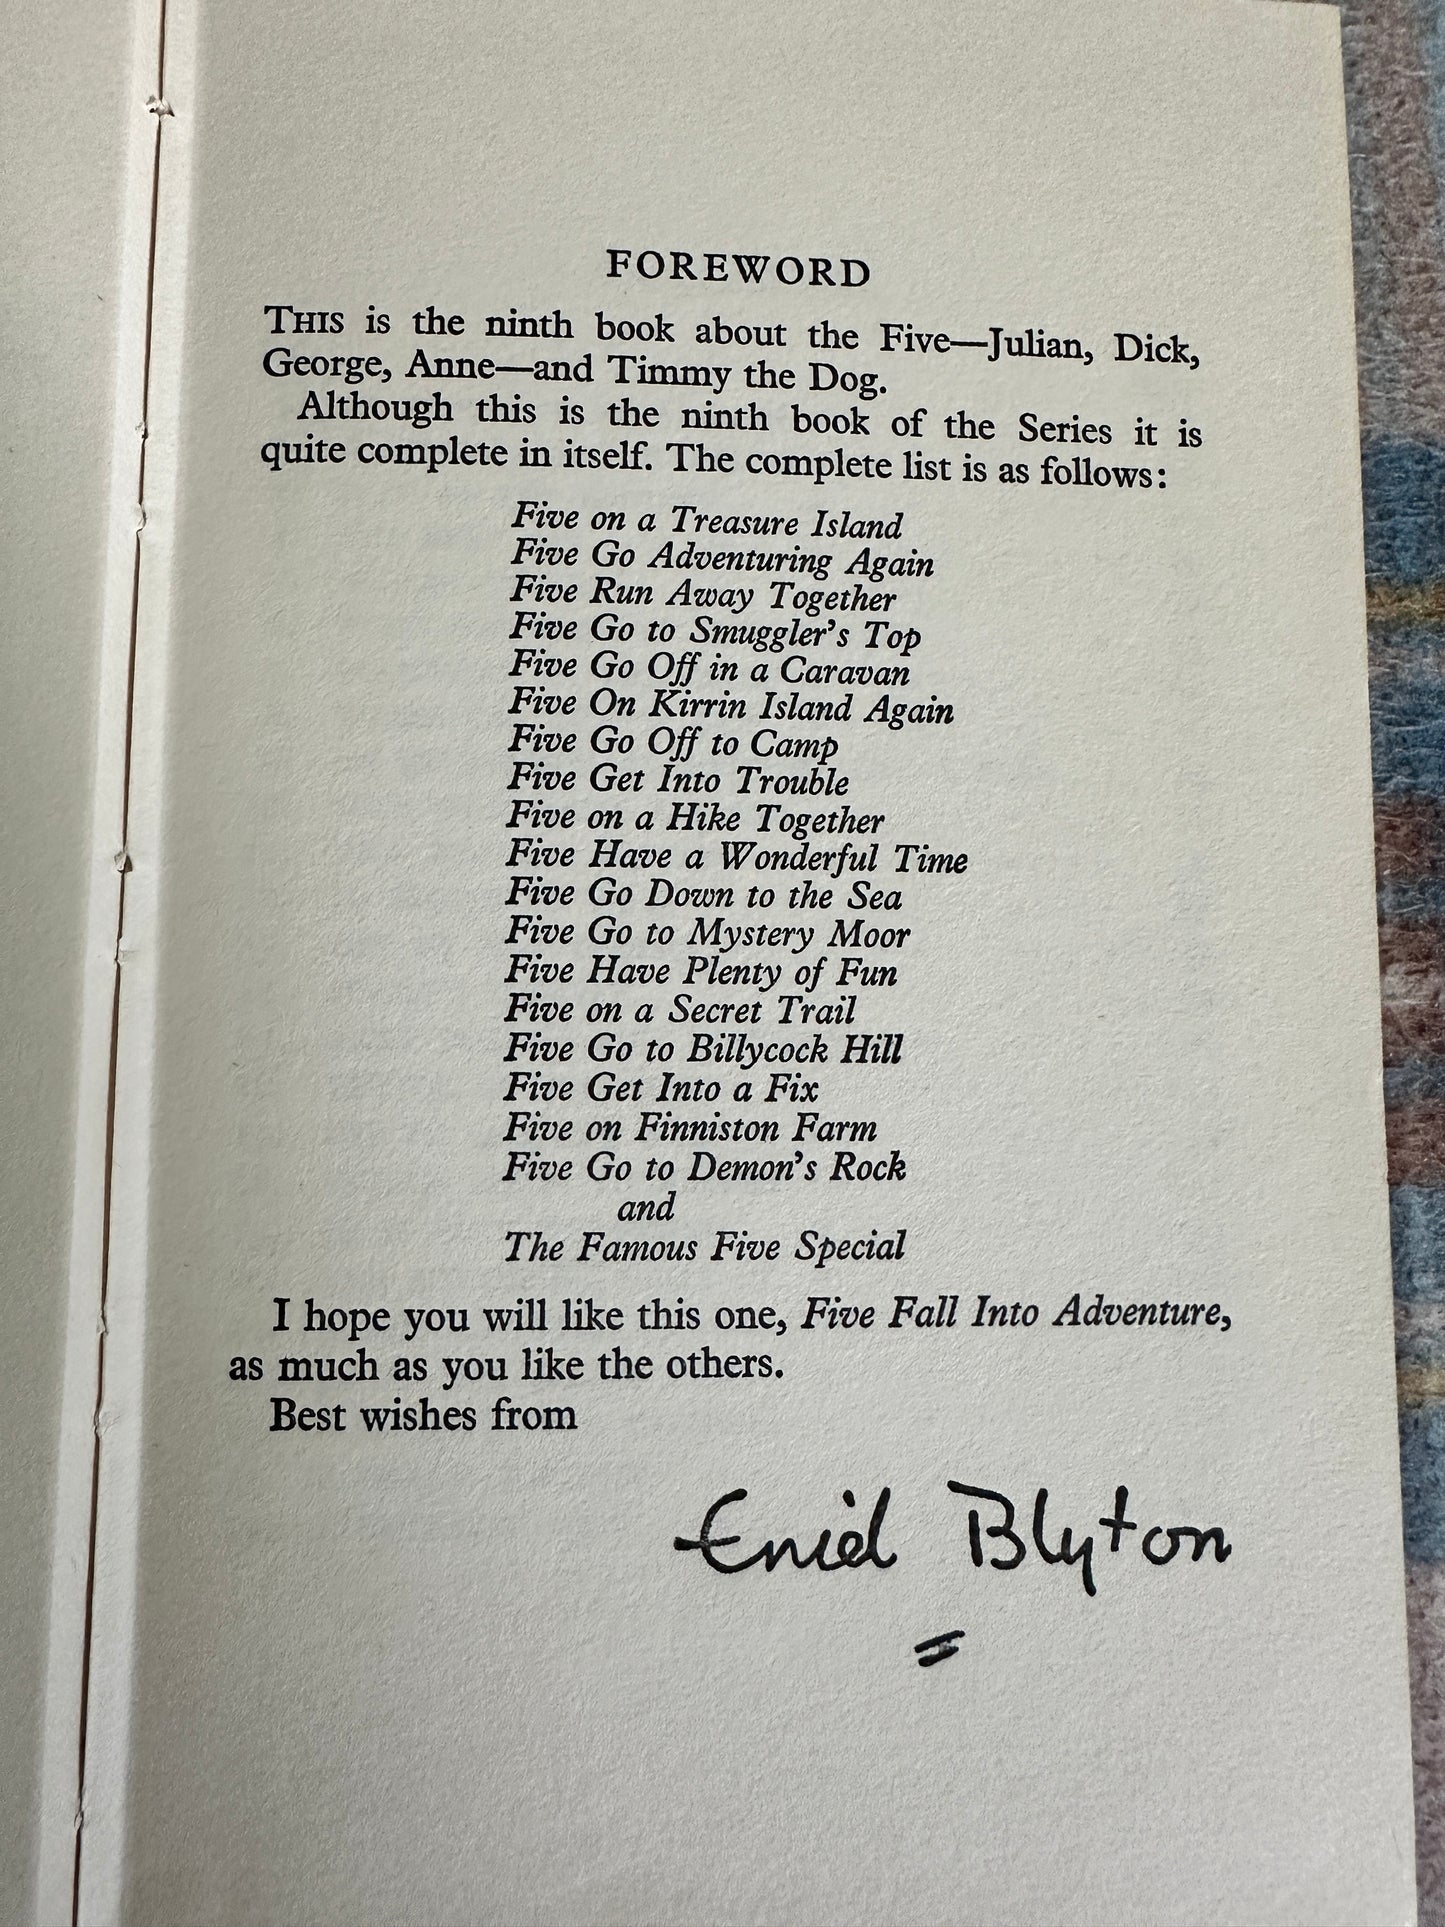 1962 Five Fall Into Adventure - Enid Blyton(Eileen Soper illustration)Hodder & Stoughton